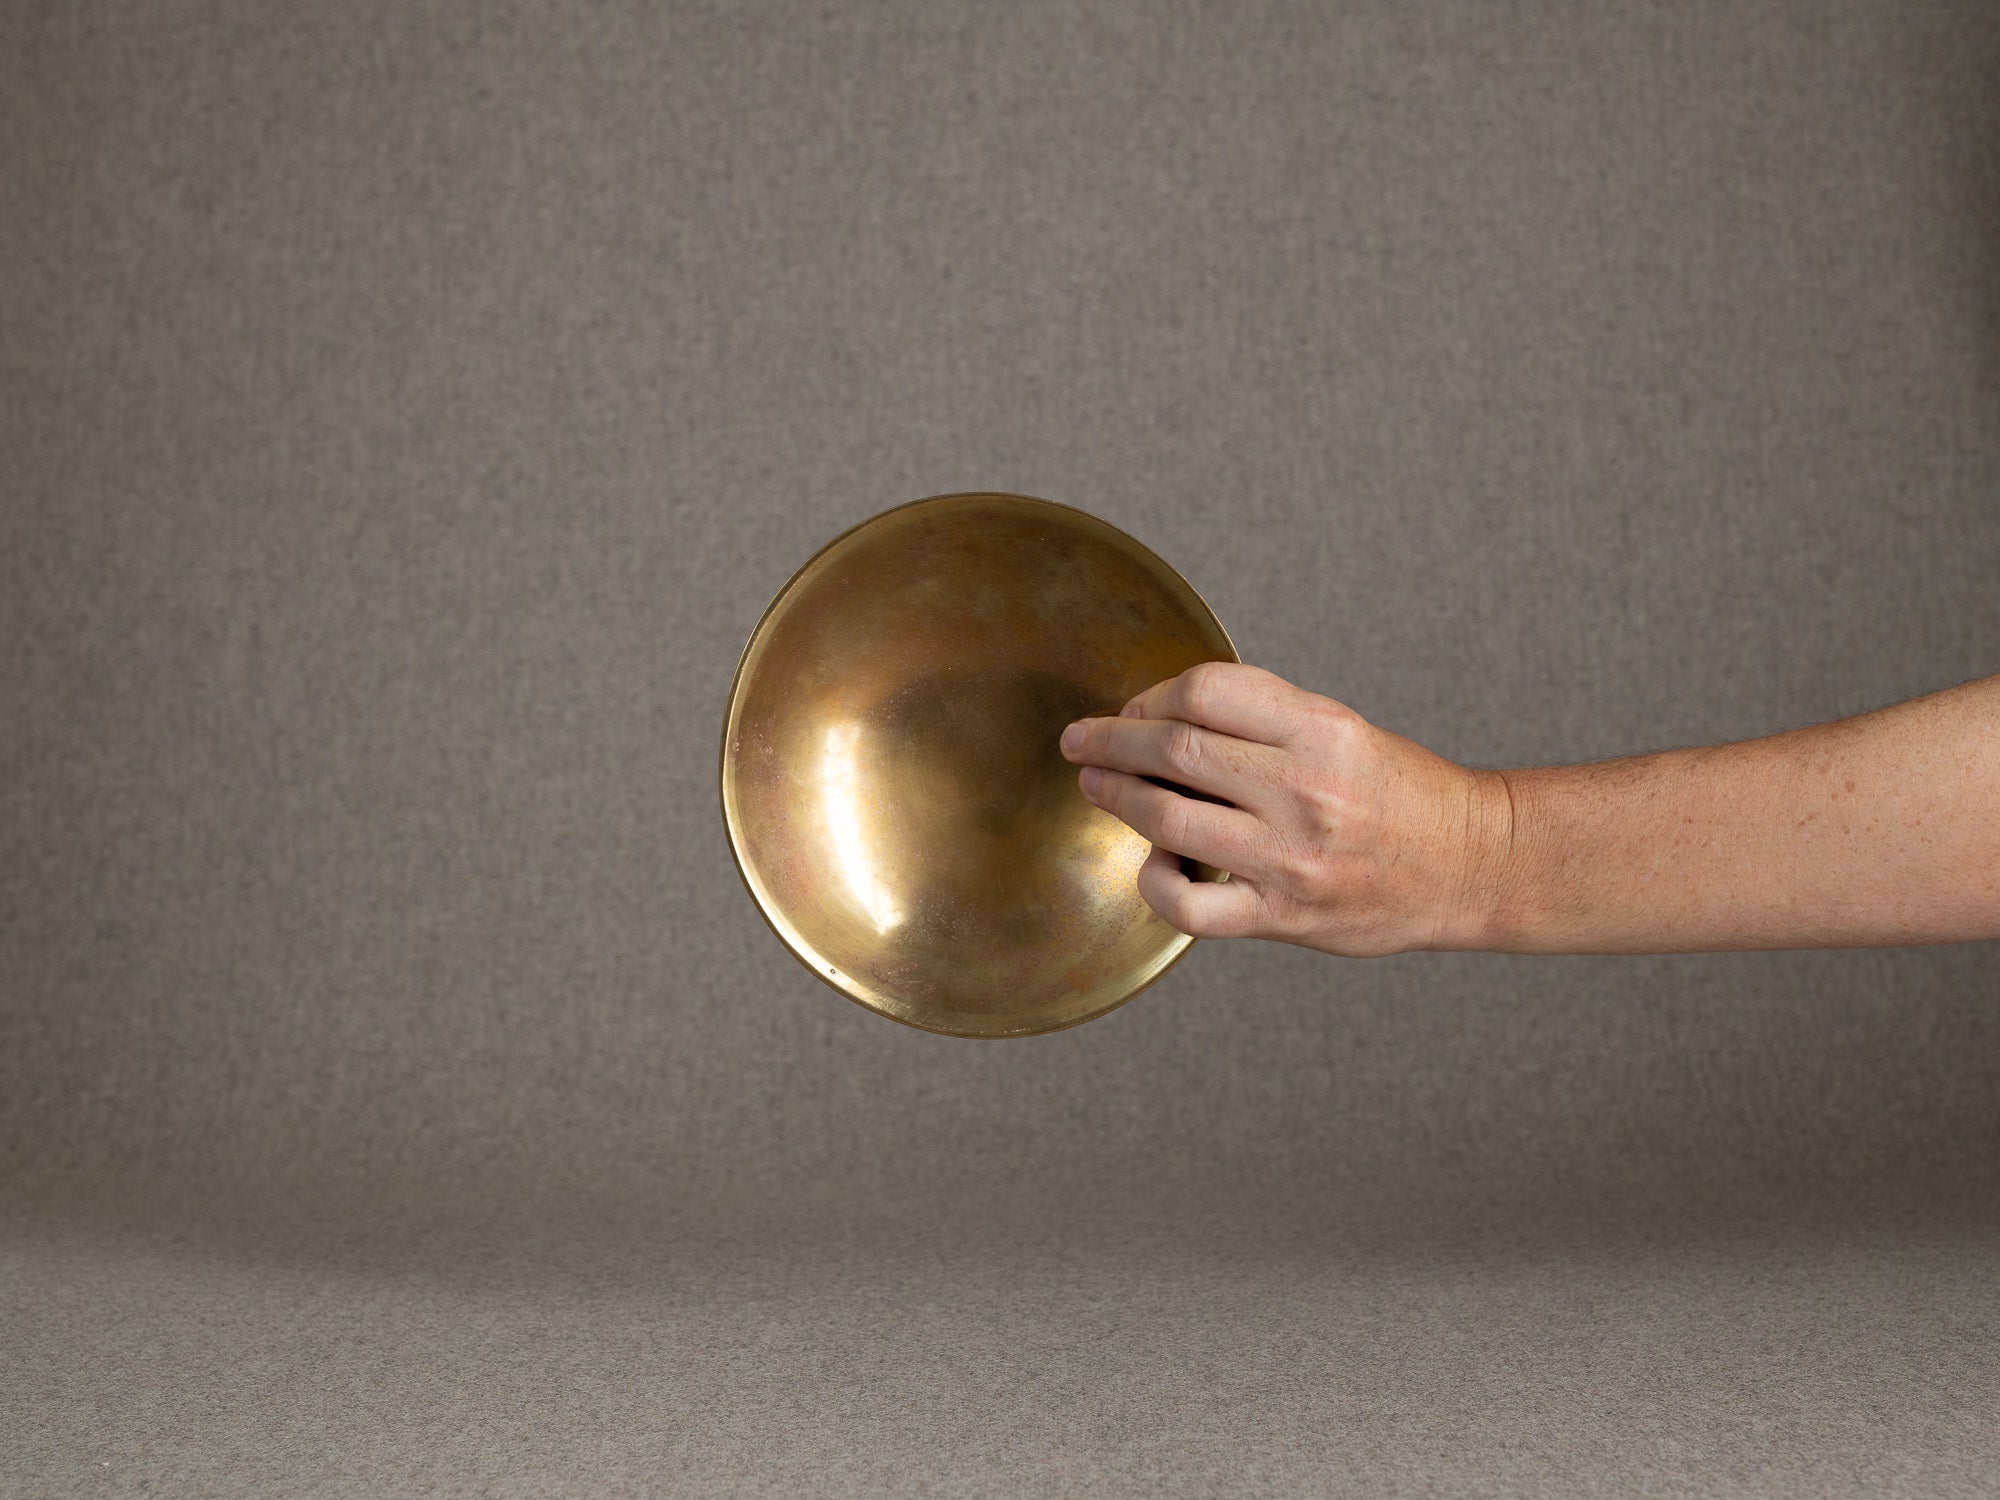 Coupe circulaire en laiton double&#x2011;paroi, Suède (vers 1960)..Circular bowl in double-walled brass, Sweden (circa 1960)